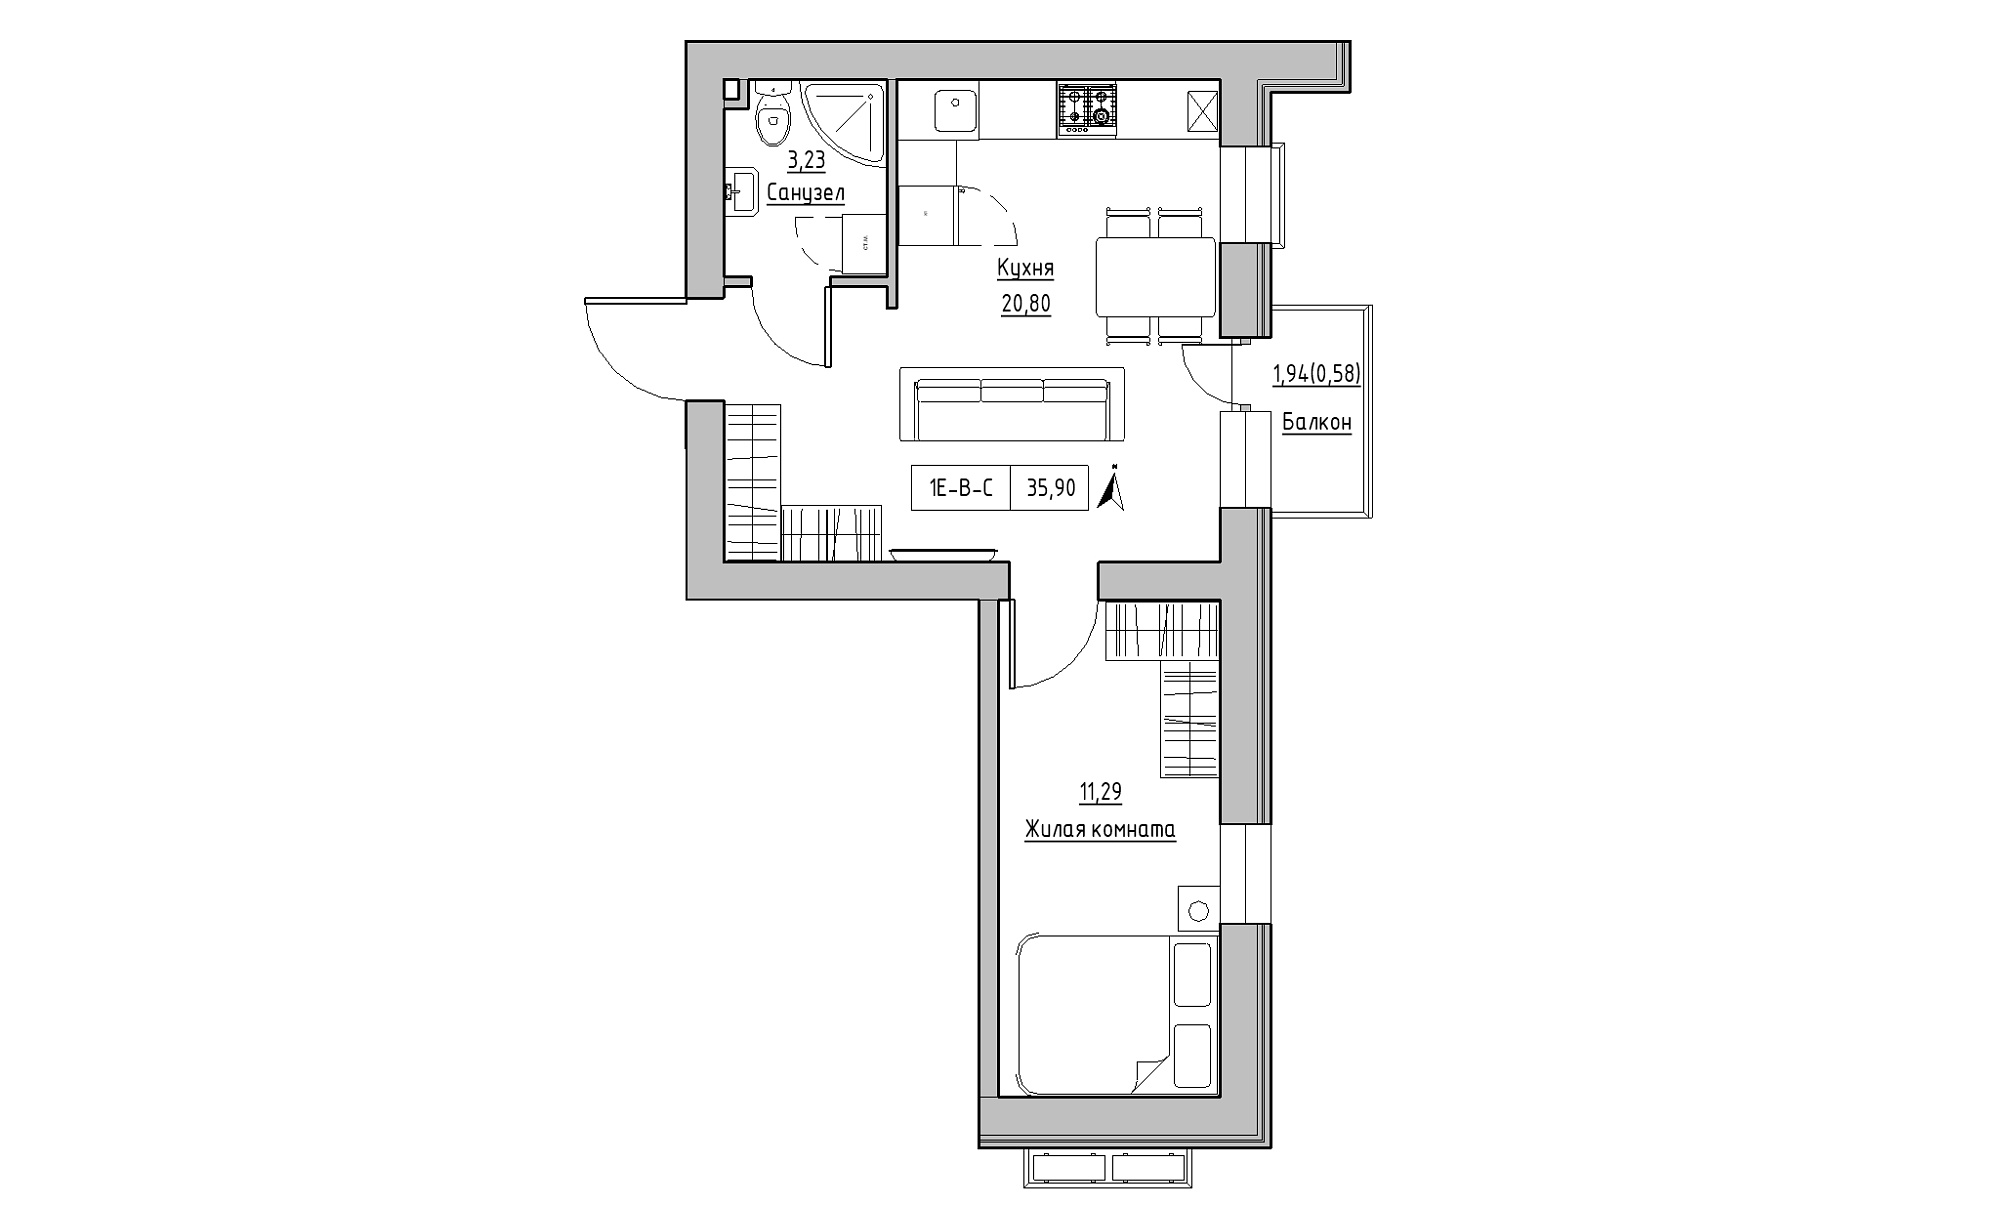 Планування 1-к квартира площею 35.9м2, KS-023-03/0008.